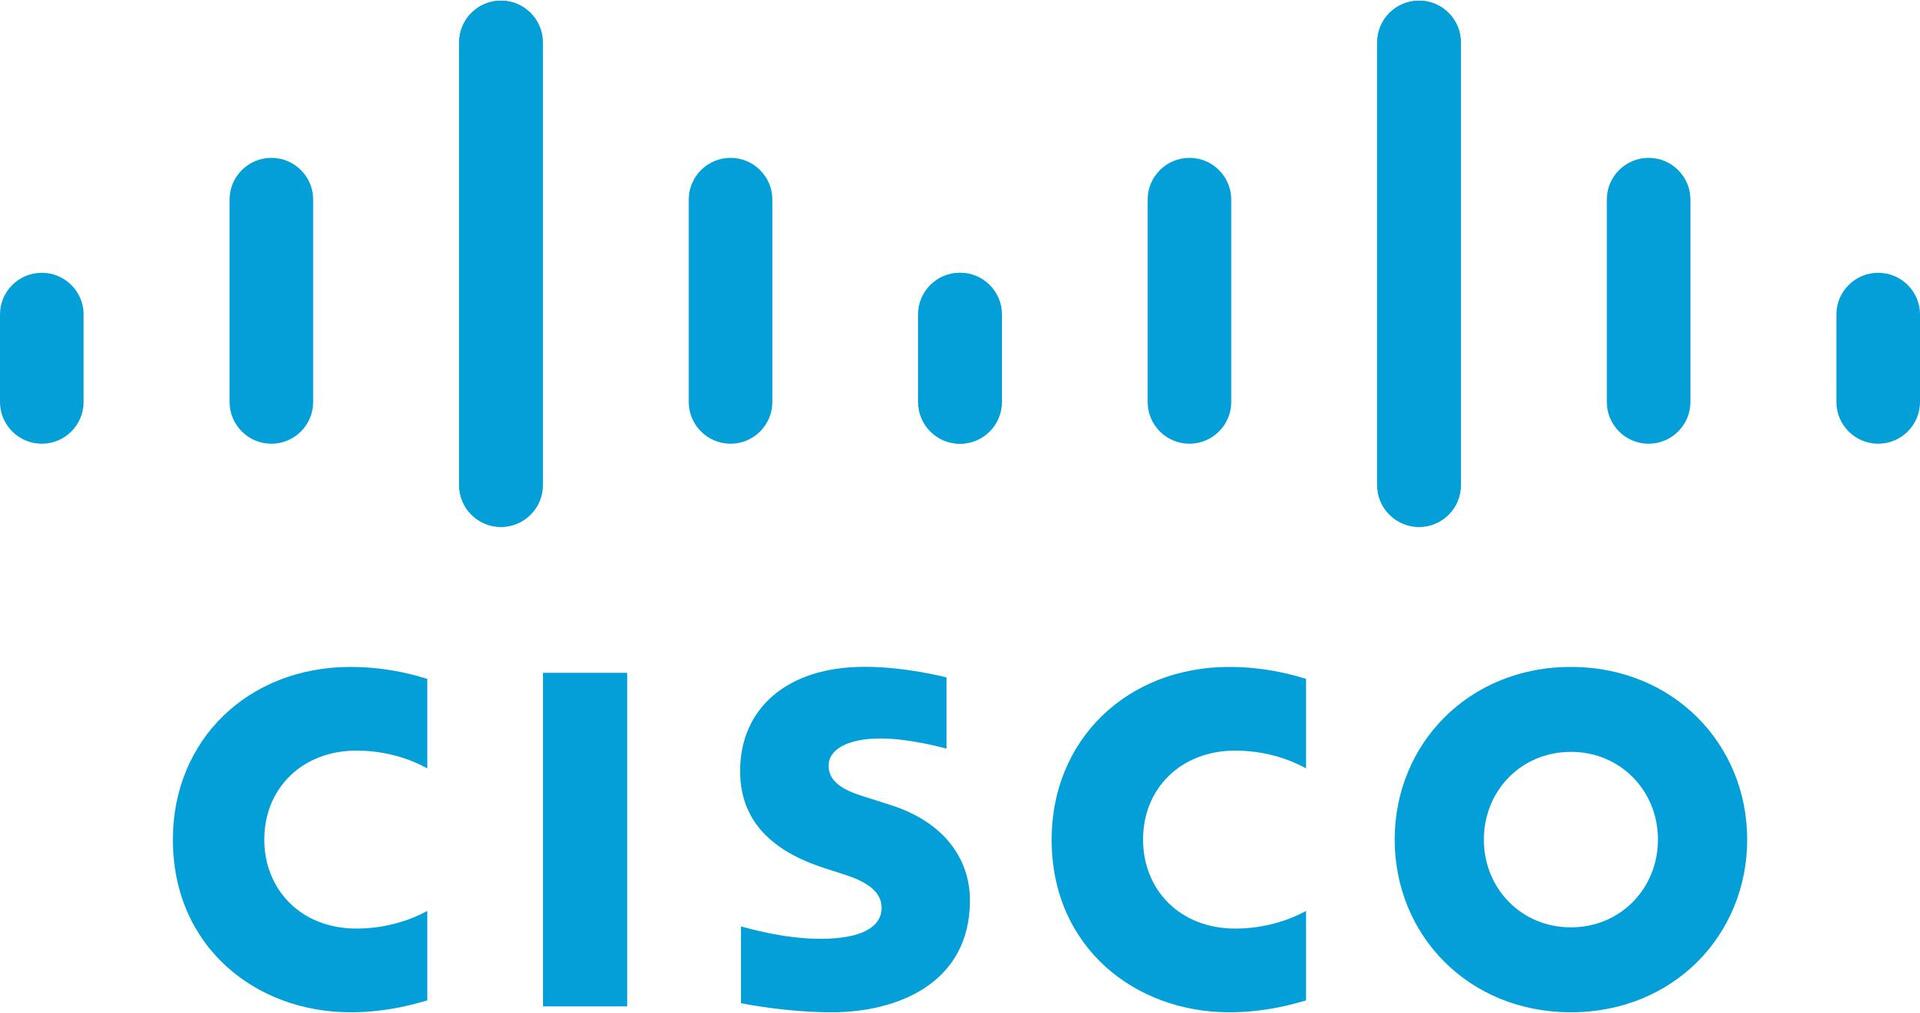 Cisco Digital Network Architecture Essentials (C9300-DNA-E-48-1R)